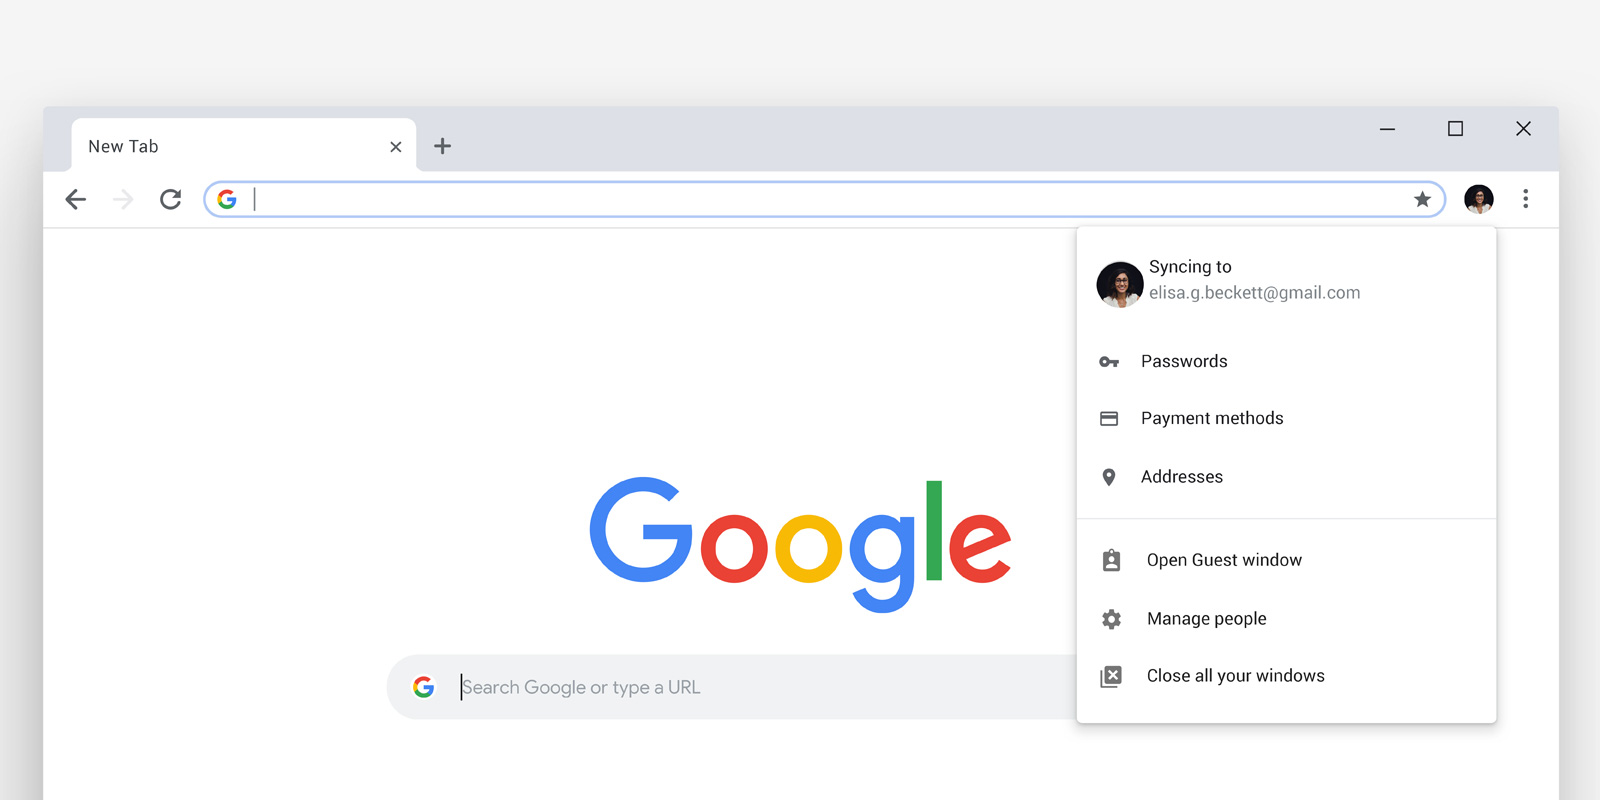 Káº¿t quáº£ hÃ¬nh áº£nh cho Google Chrome gets a big redesign and new features for its 10th birthday